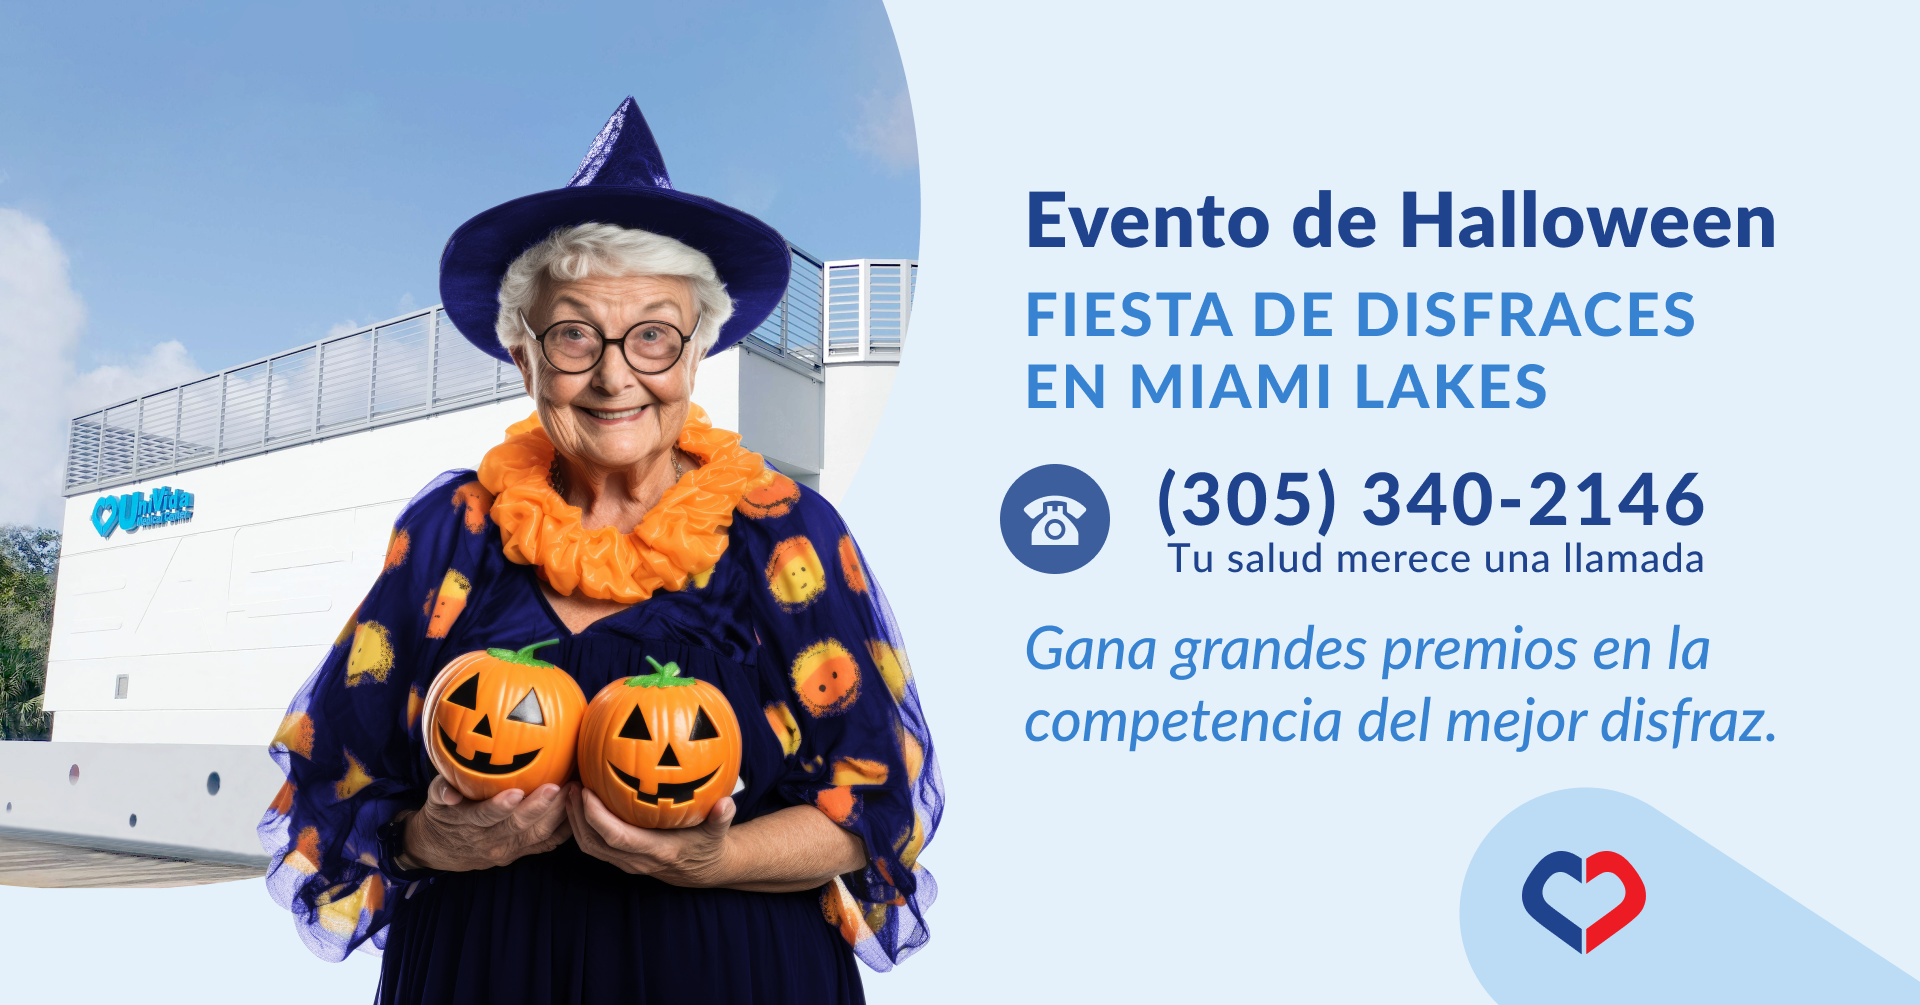 Evento de Halloween en Miami Lakes